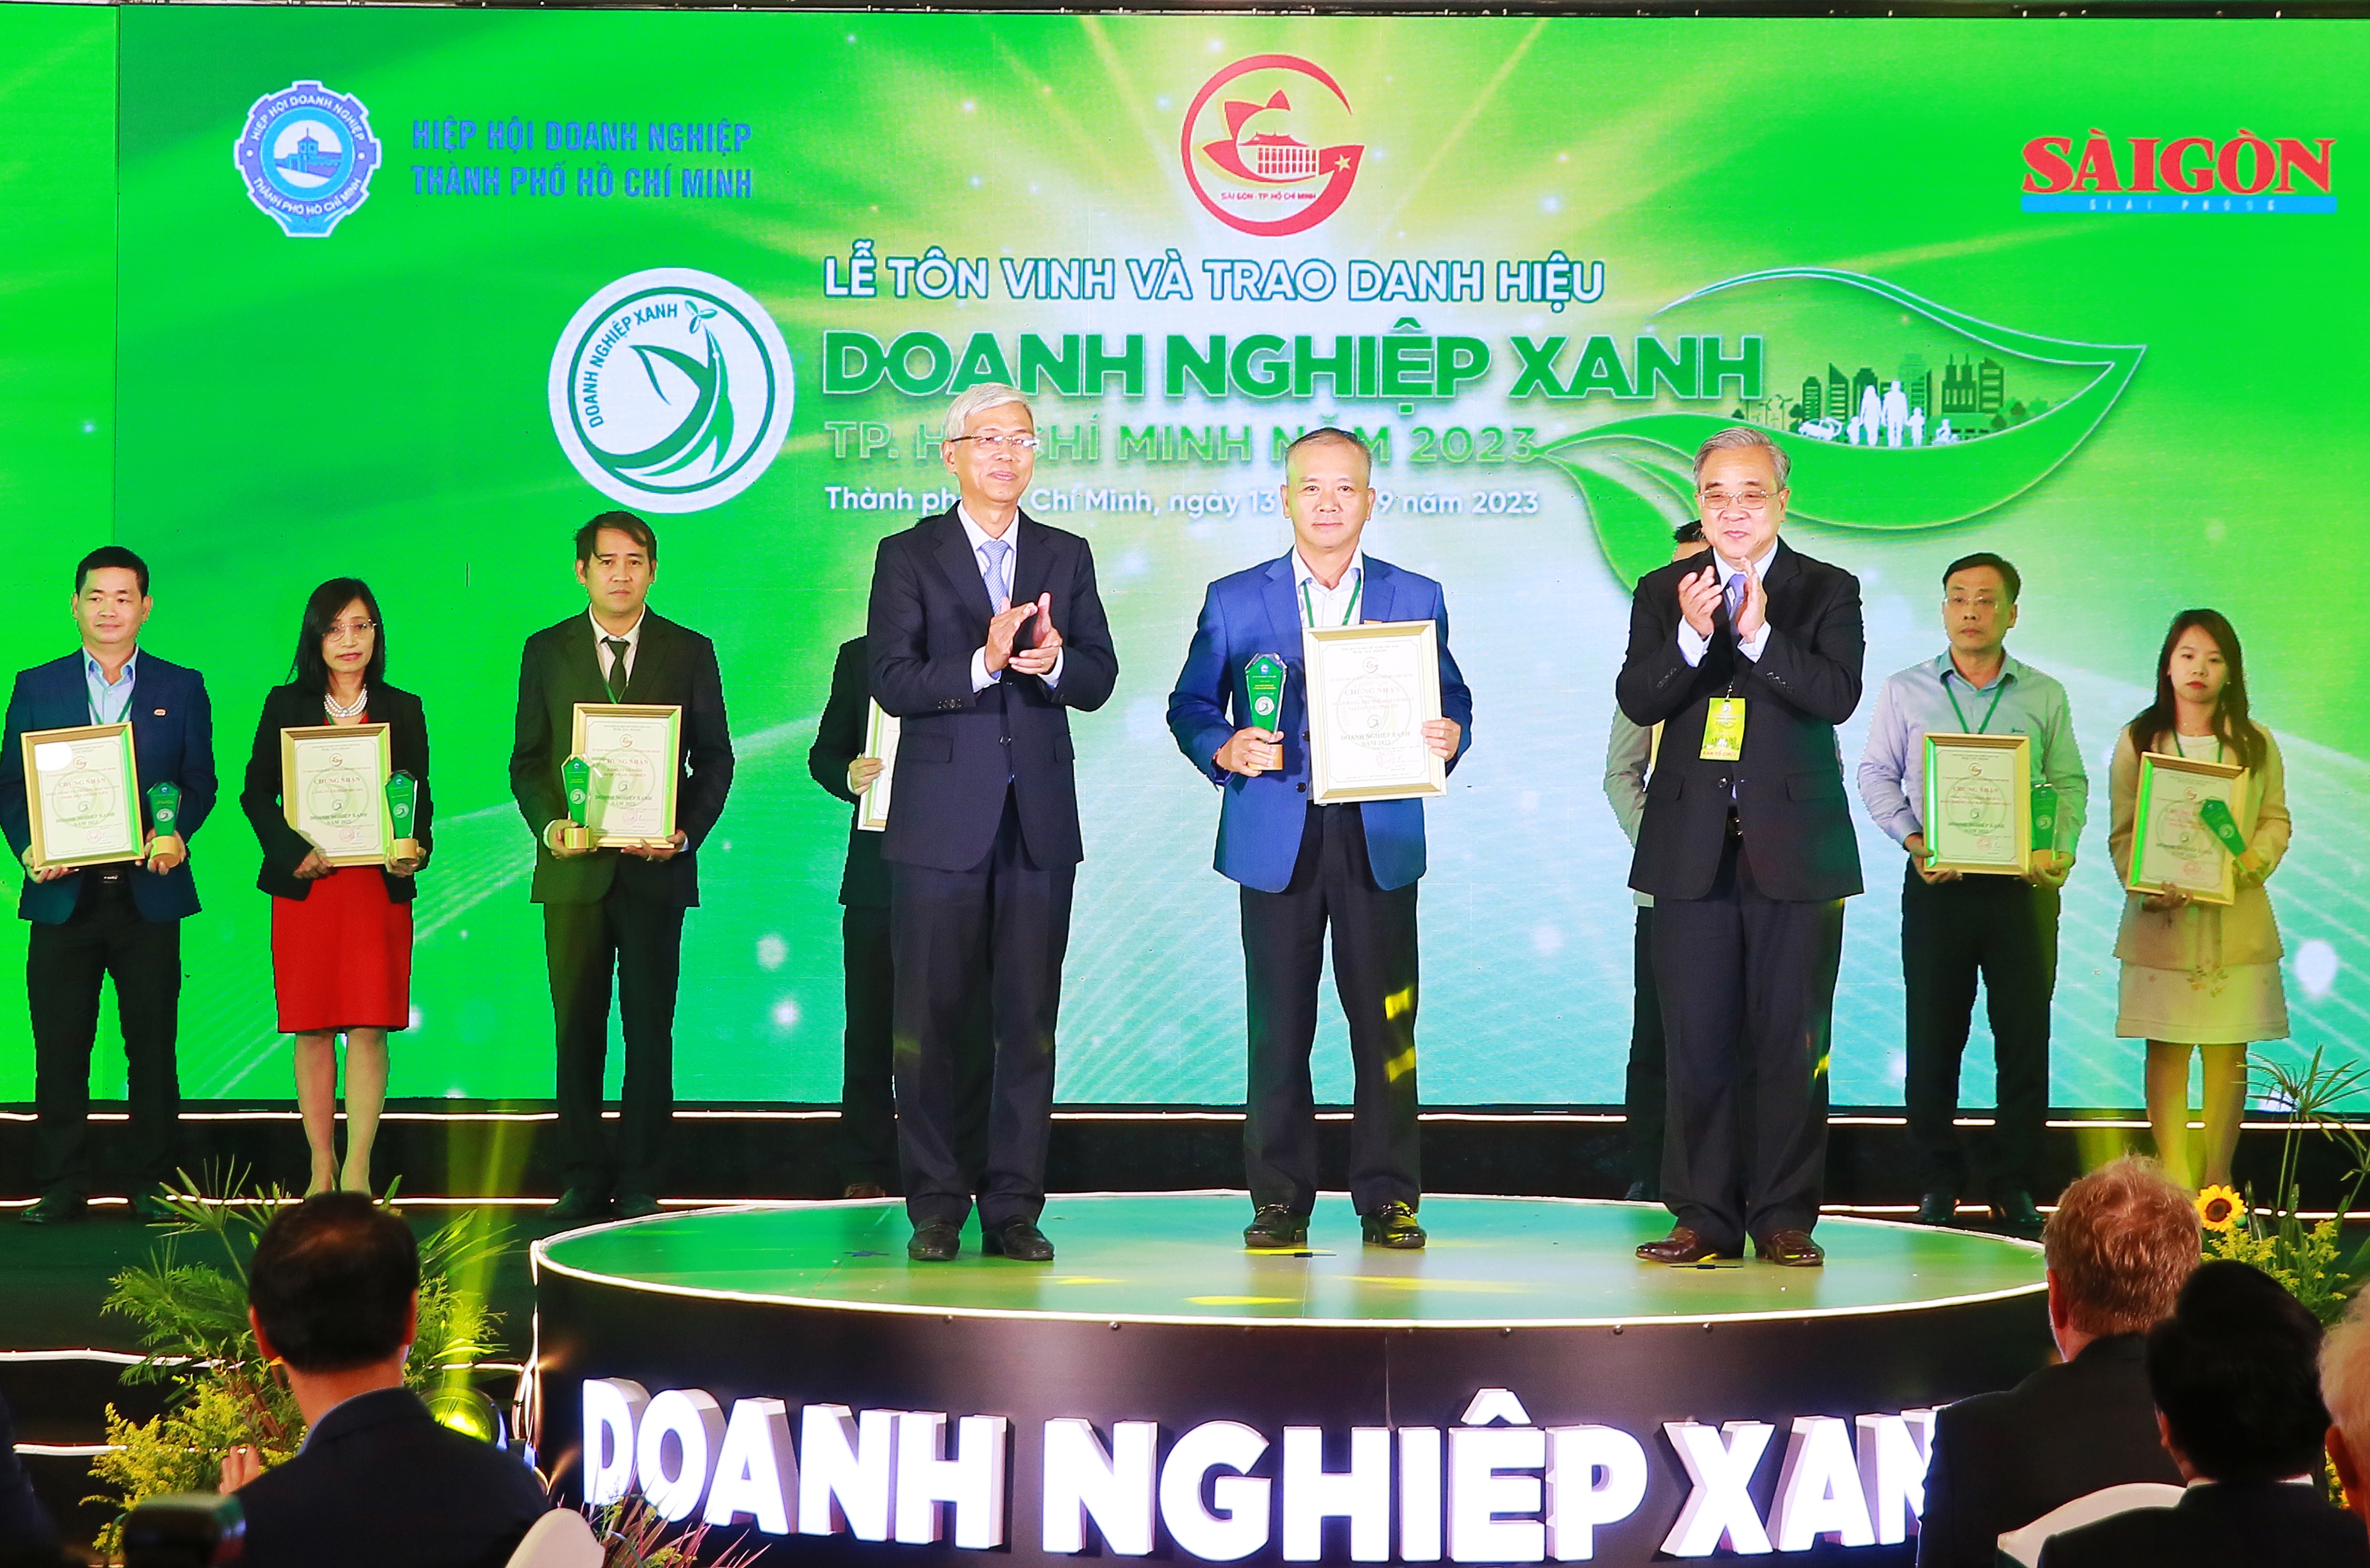 Ông Phan Đình Tuệ - Thành viên HĐQT Sacombank nhận giải thưởng “Doanh nghiệp xanh TP.HCM năm 2023” từ đại diện BTC